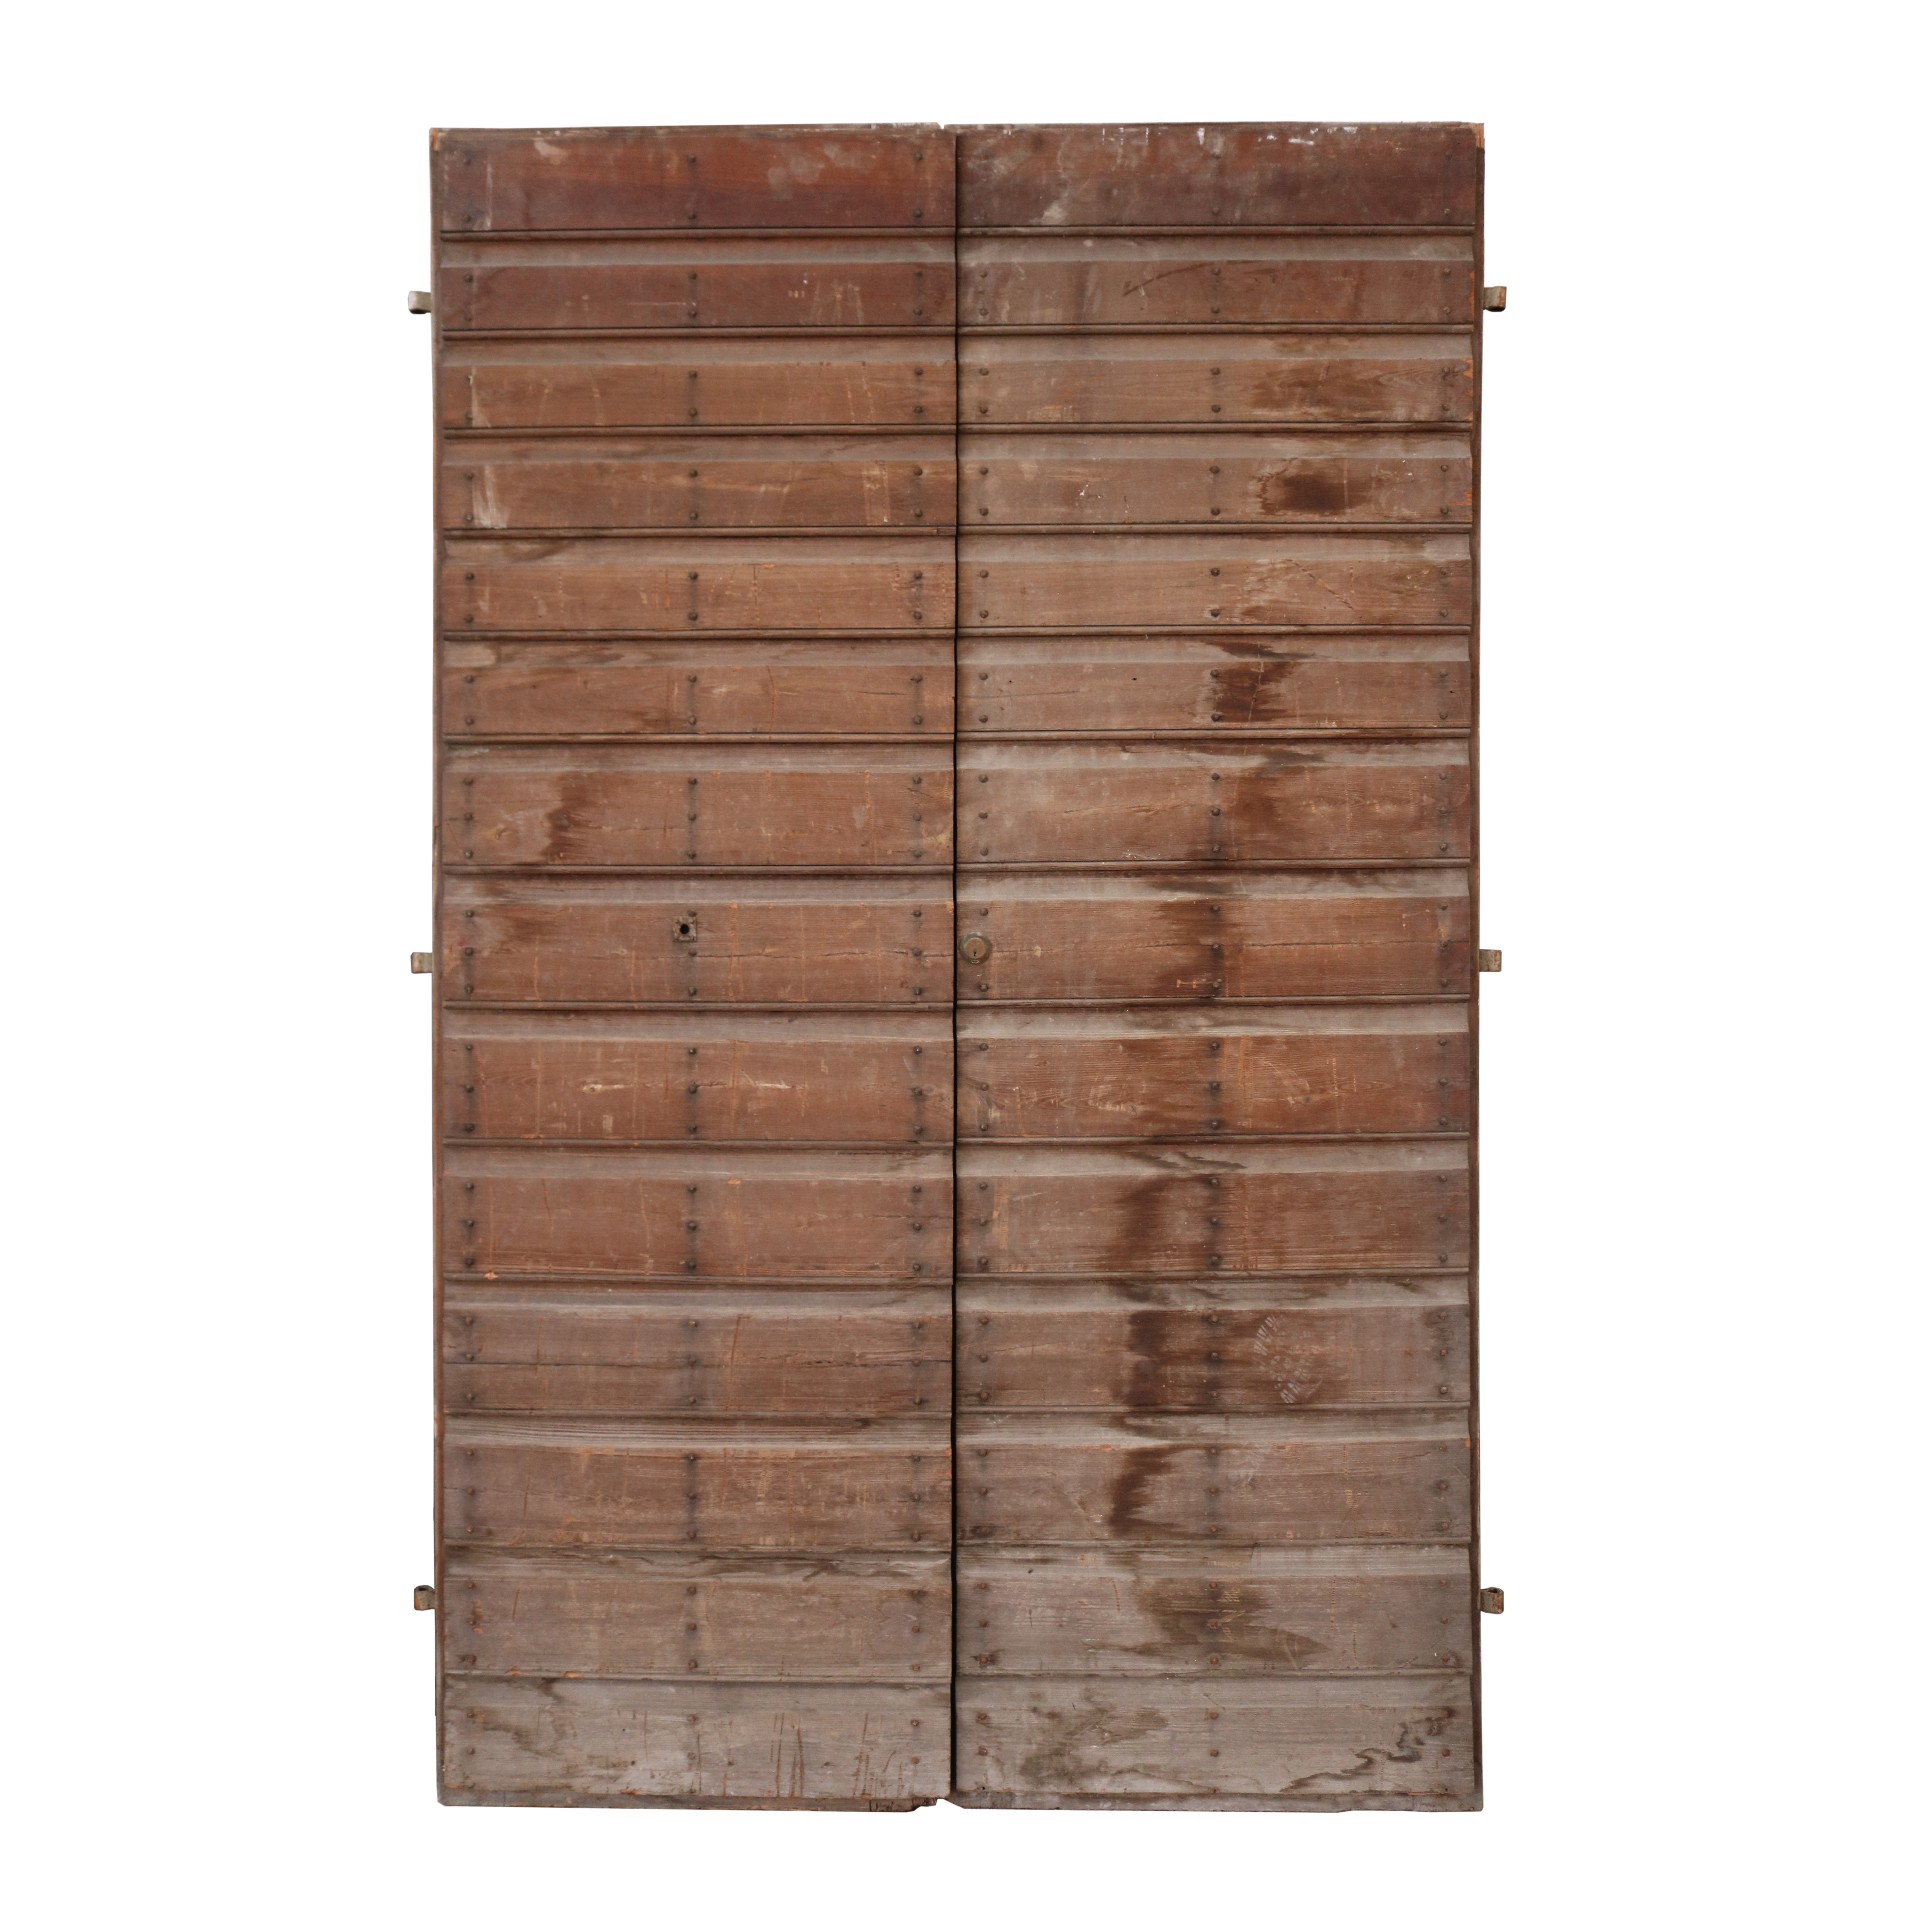 Antico portone in legno - Portoni Antichi - Porte Antiche - Prodotti - Antichità Fiorillo